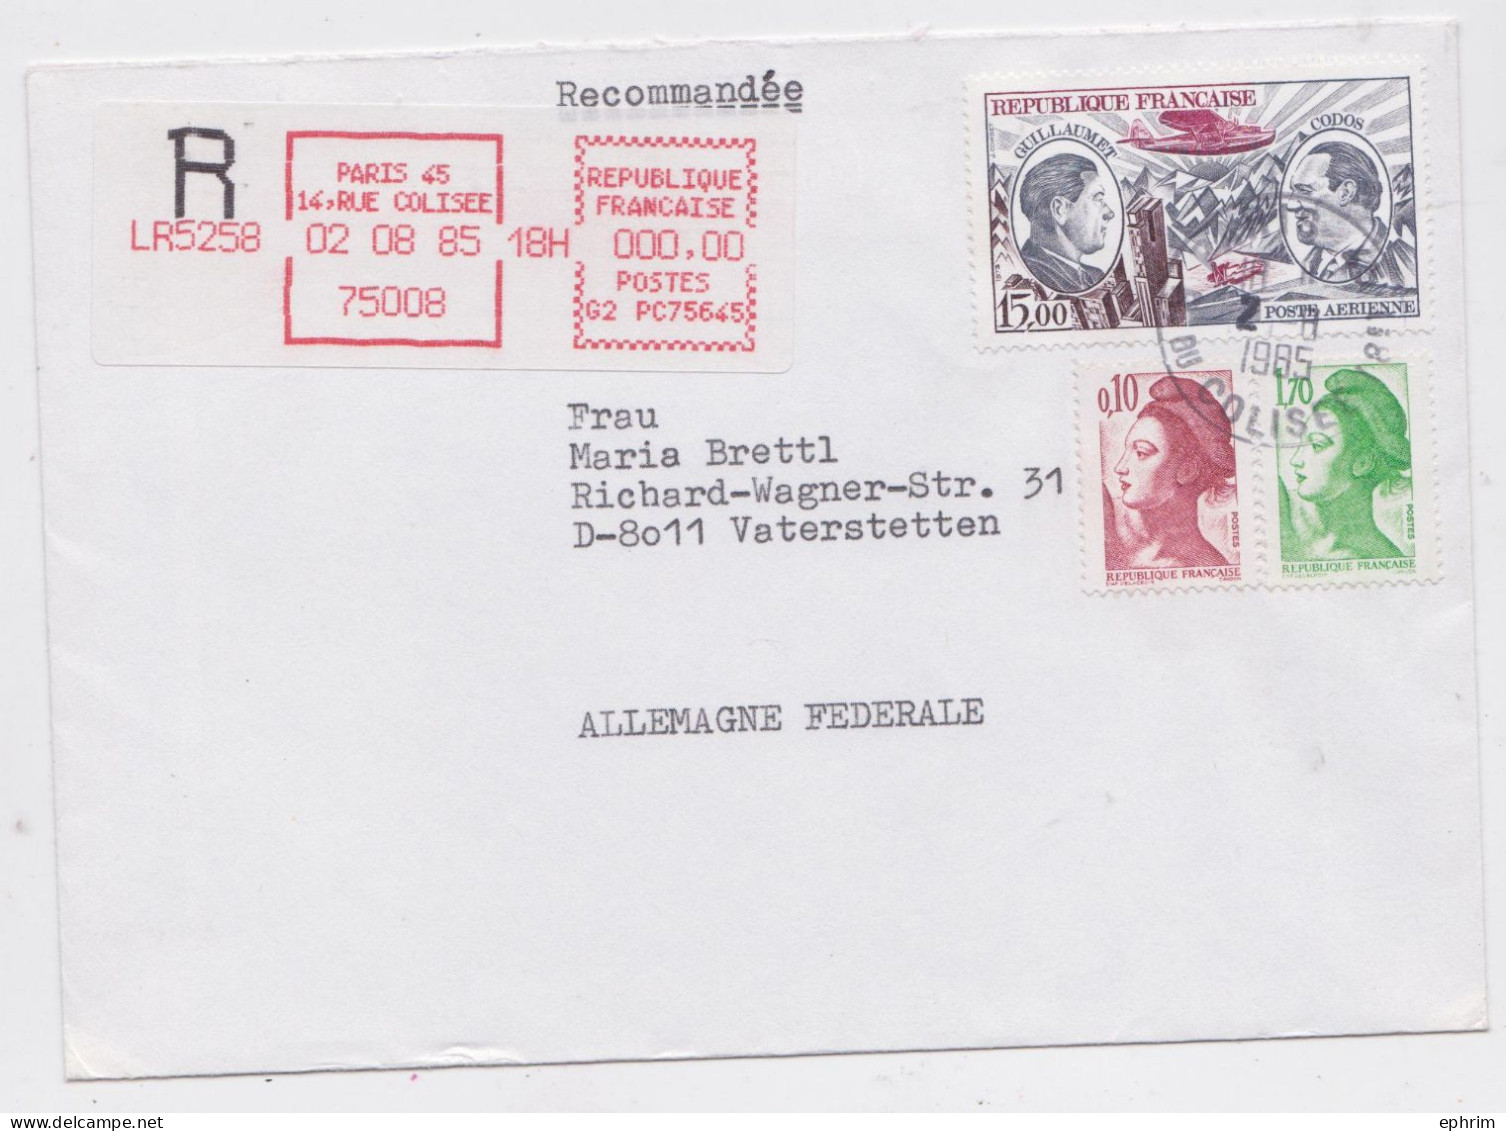 France Paris Lettre Vignette Recommandée Rouge Timbre Poste Aérienne Registered Label Air Mail Cover Vaterstetten 1985 - Covers & Documents